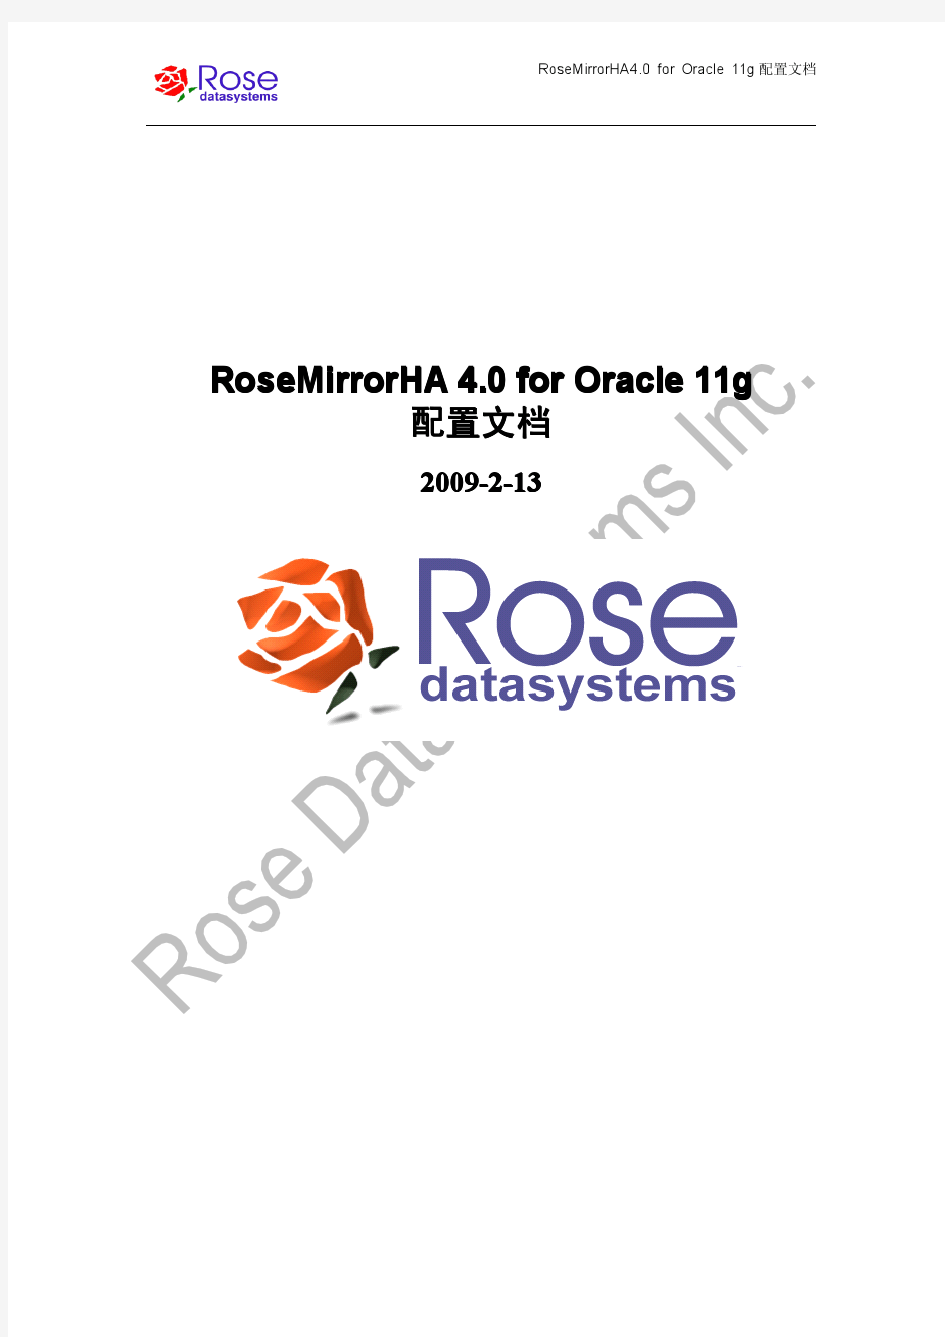 RoseMirrorHA4.0 Oracle 11g配置文档